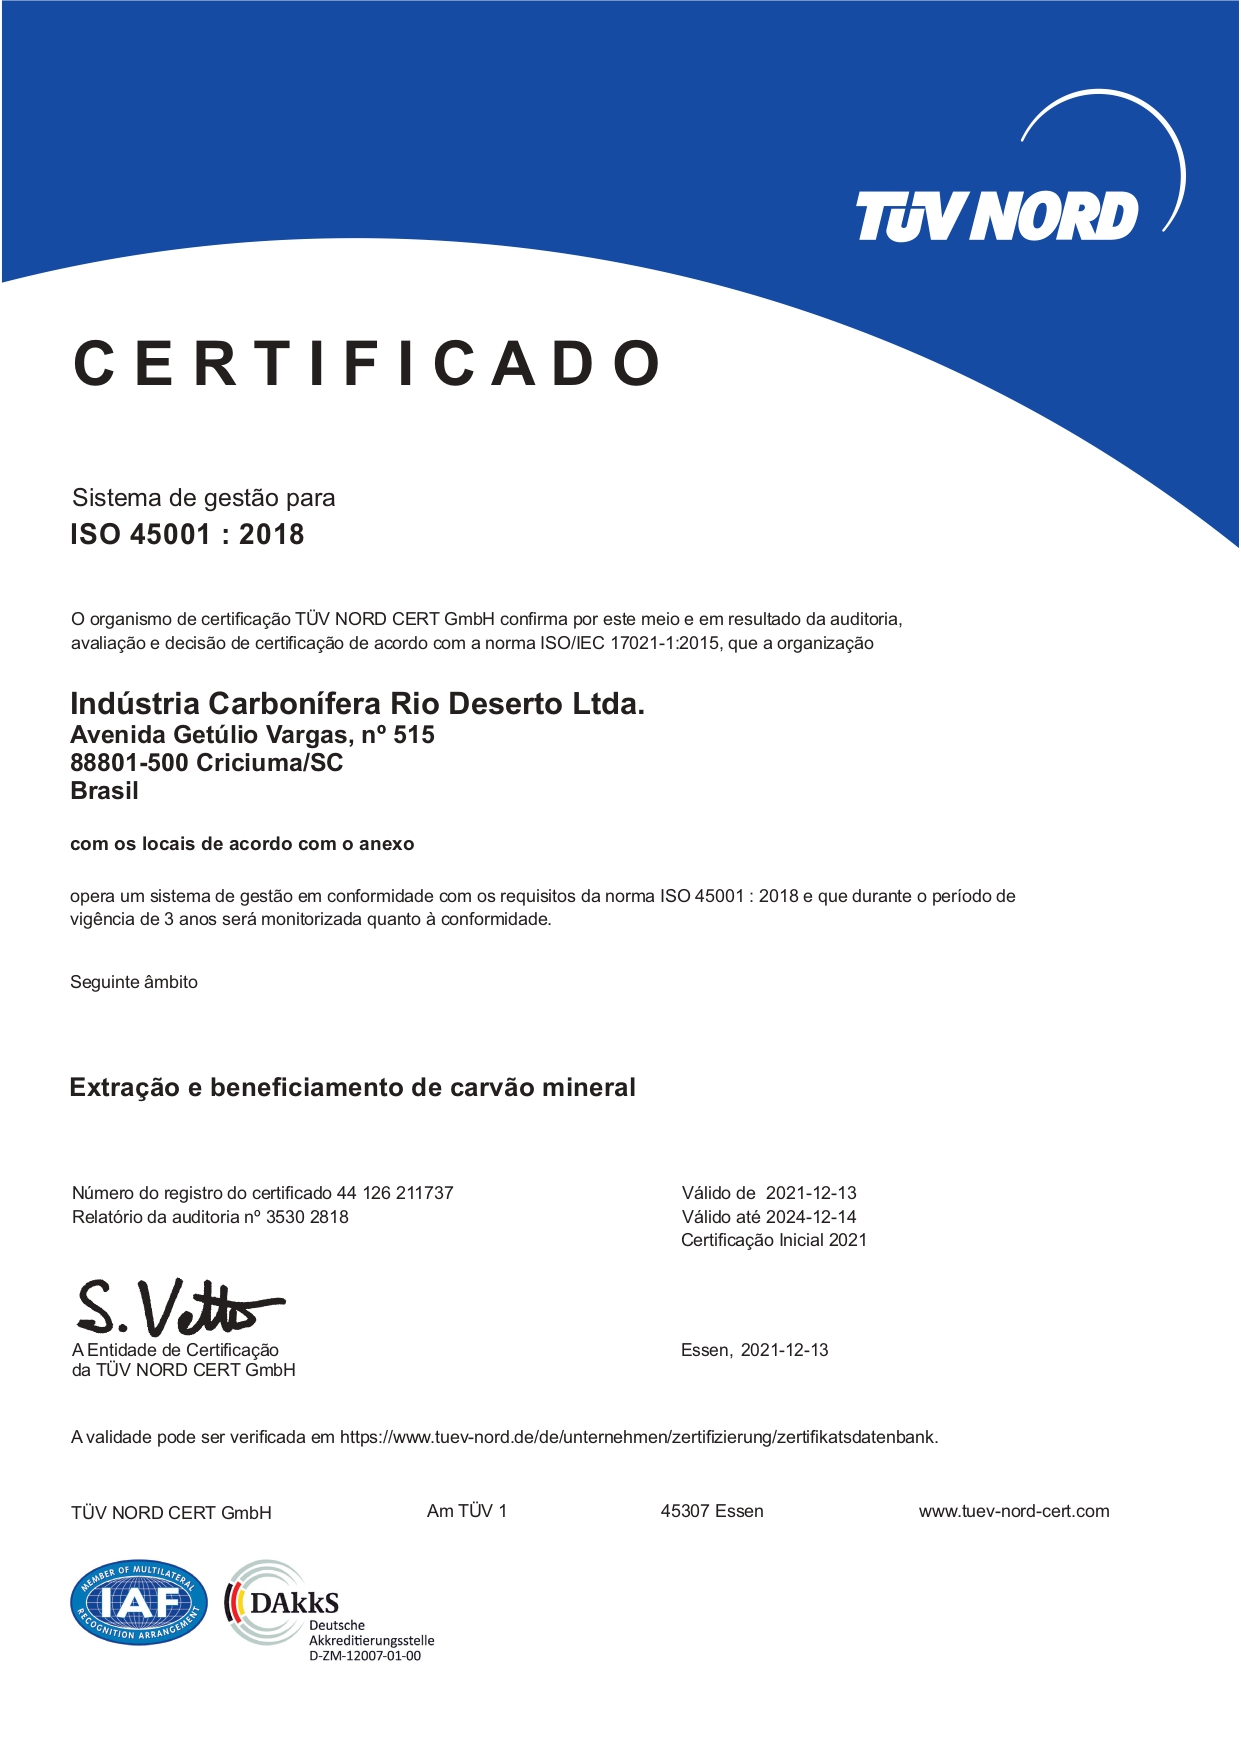 Sistema de gestão certificado na NBR ISO 45001:2018